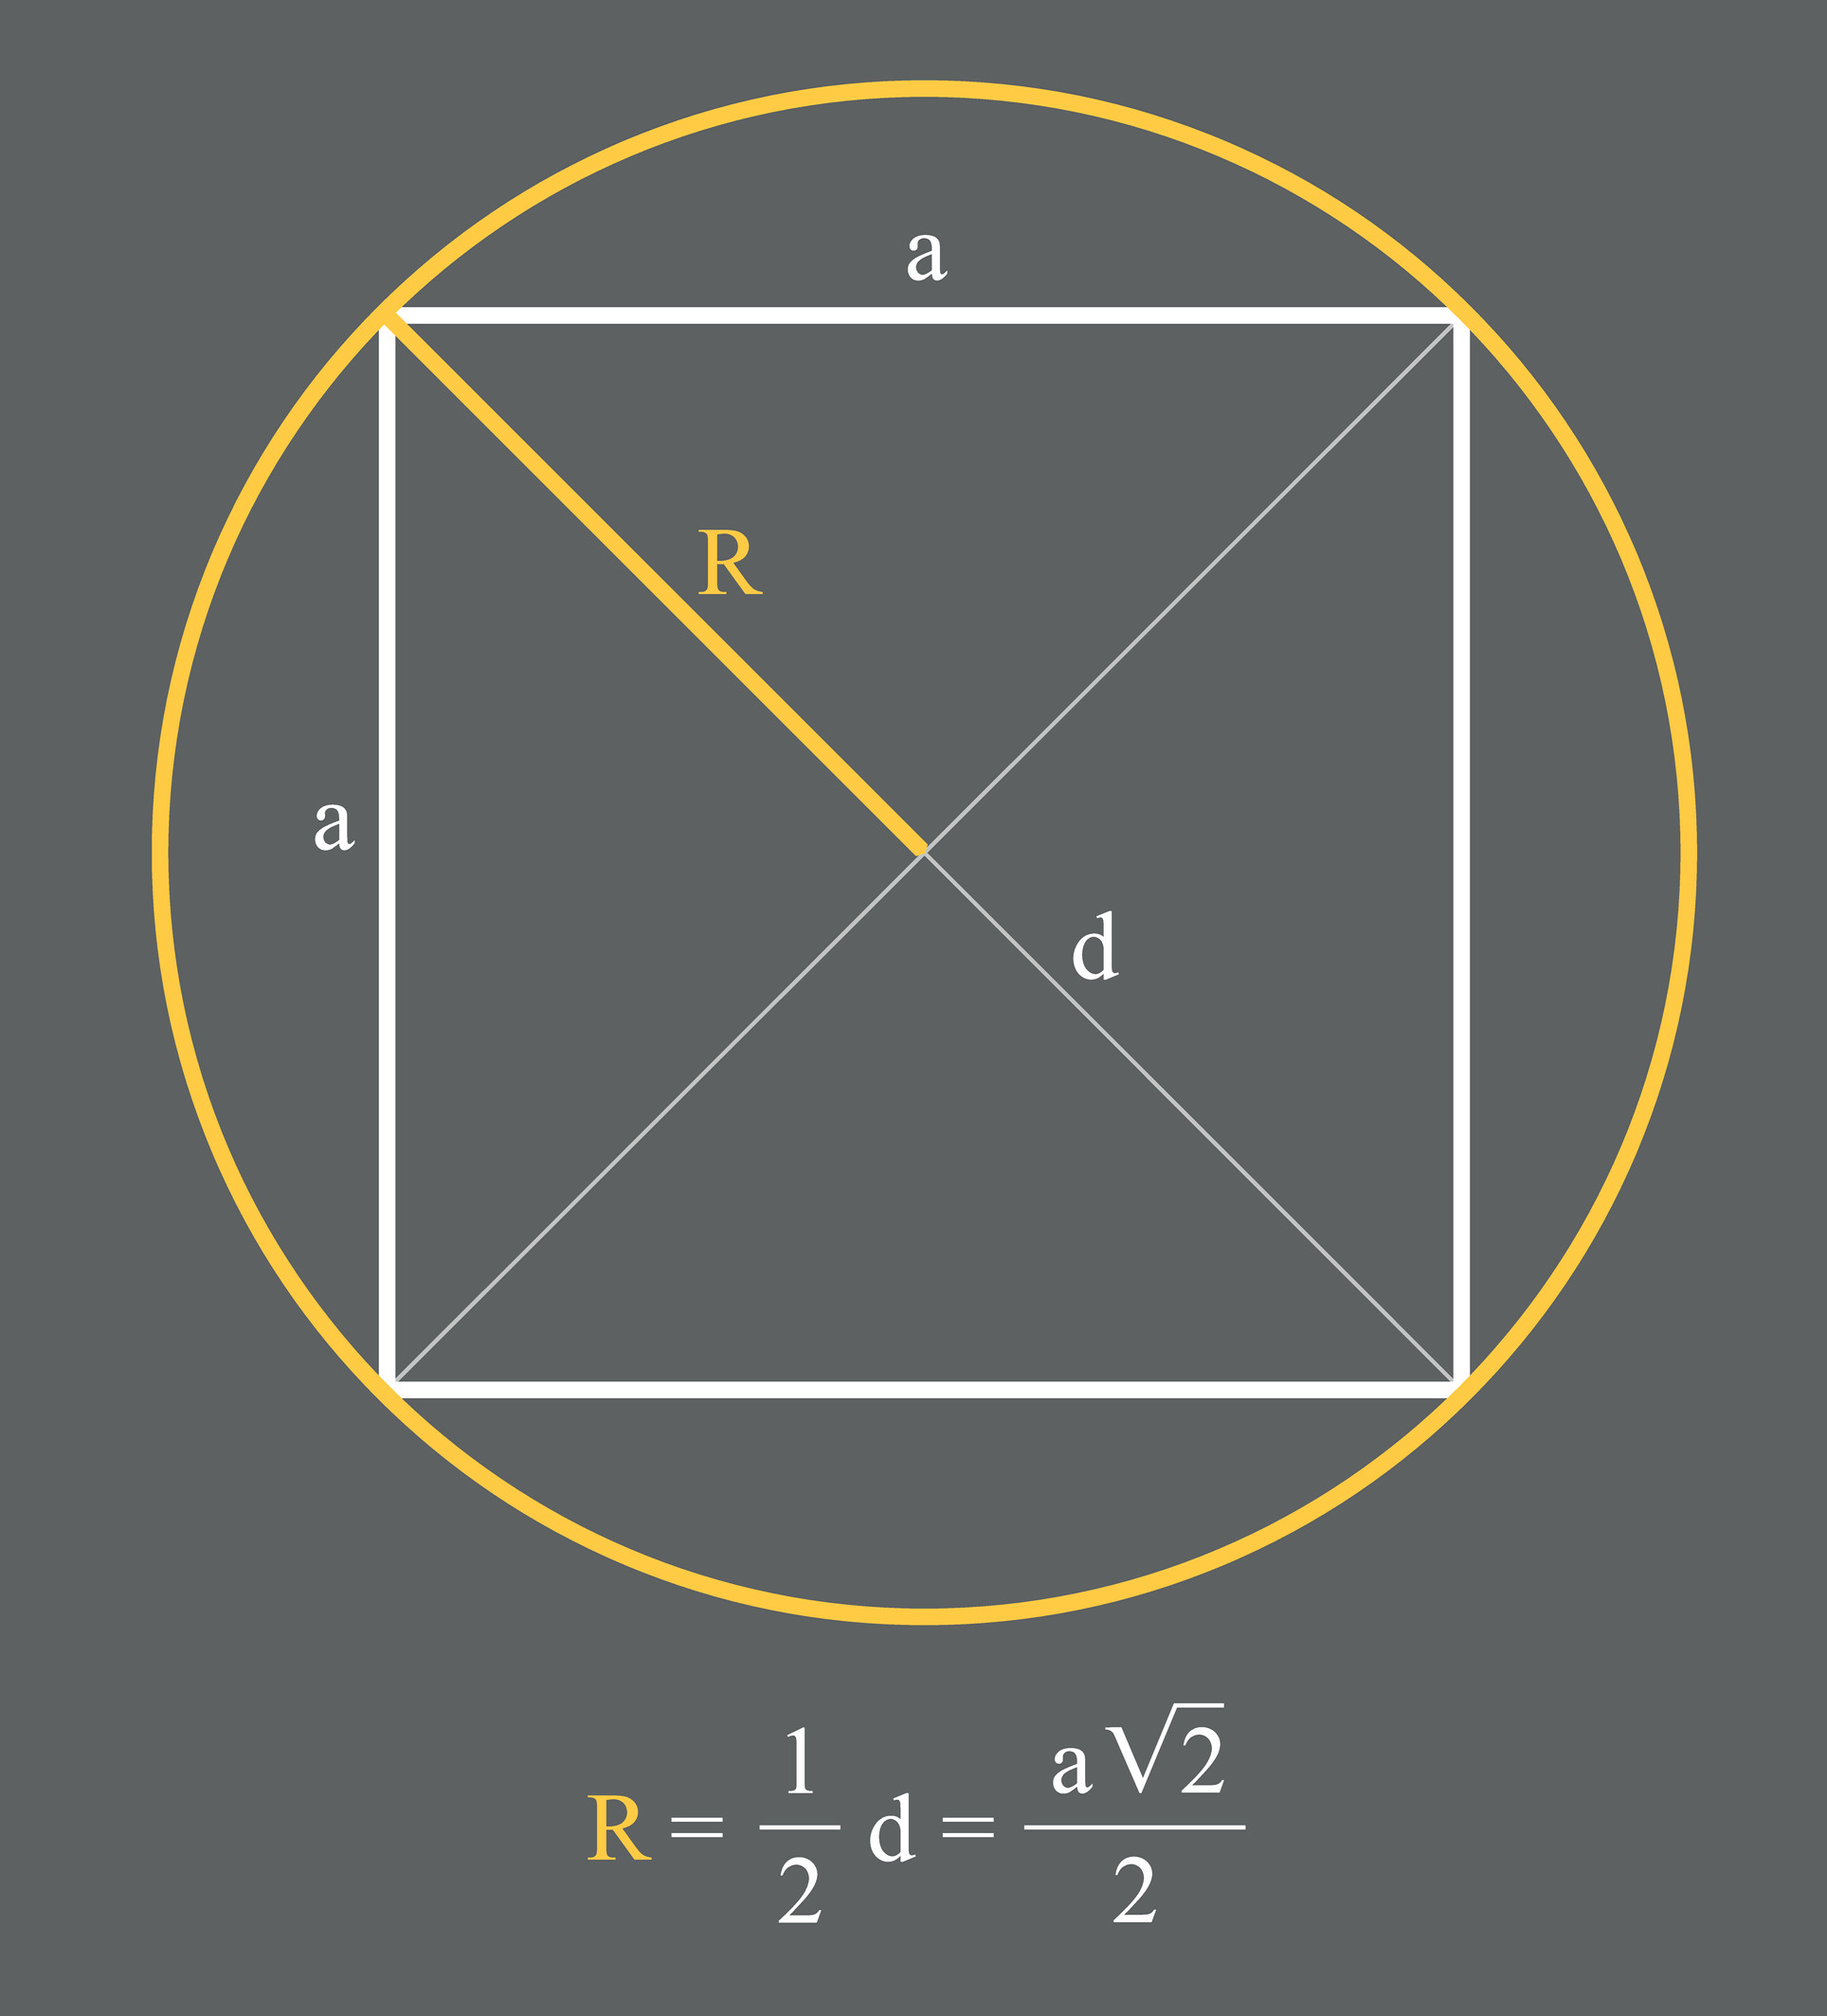 Perímetro do quadrado inscrito em uma circunferência.